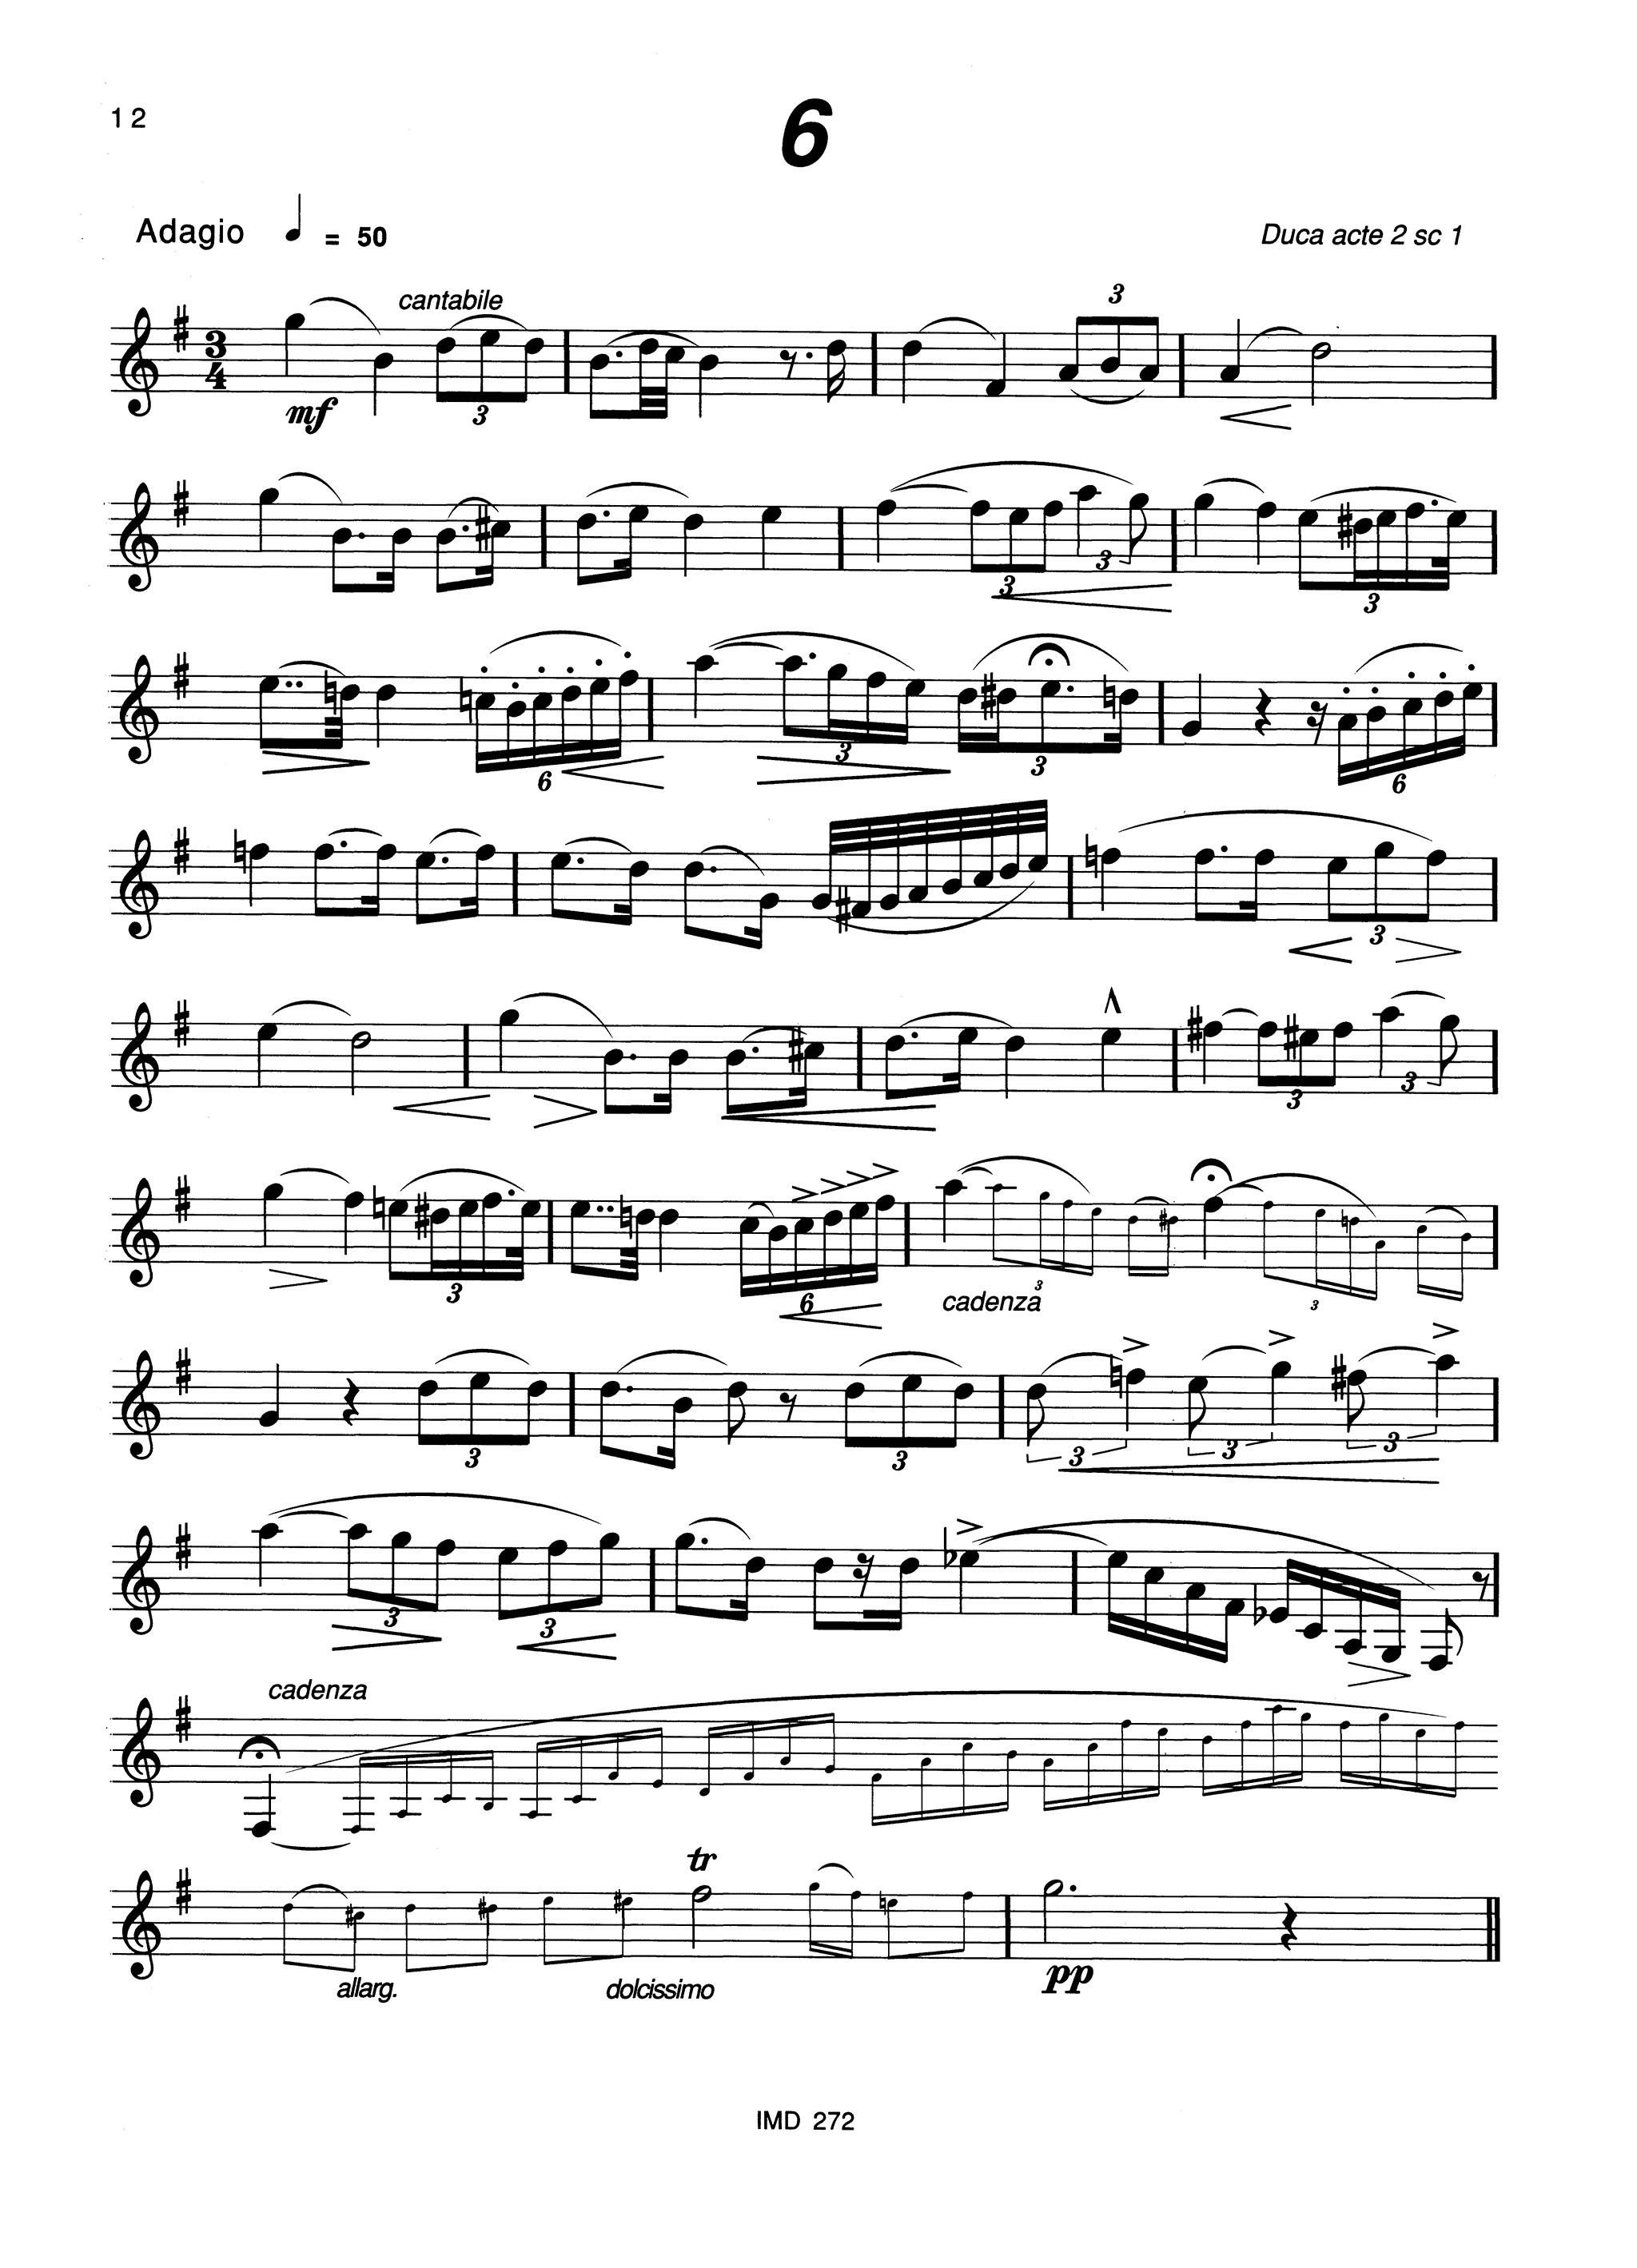 33 Études after Verdi Page 12